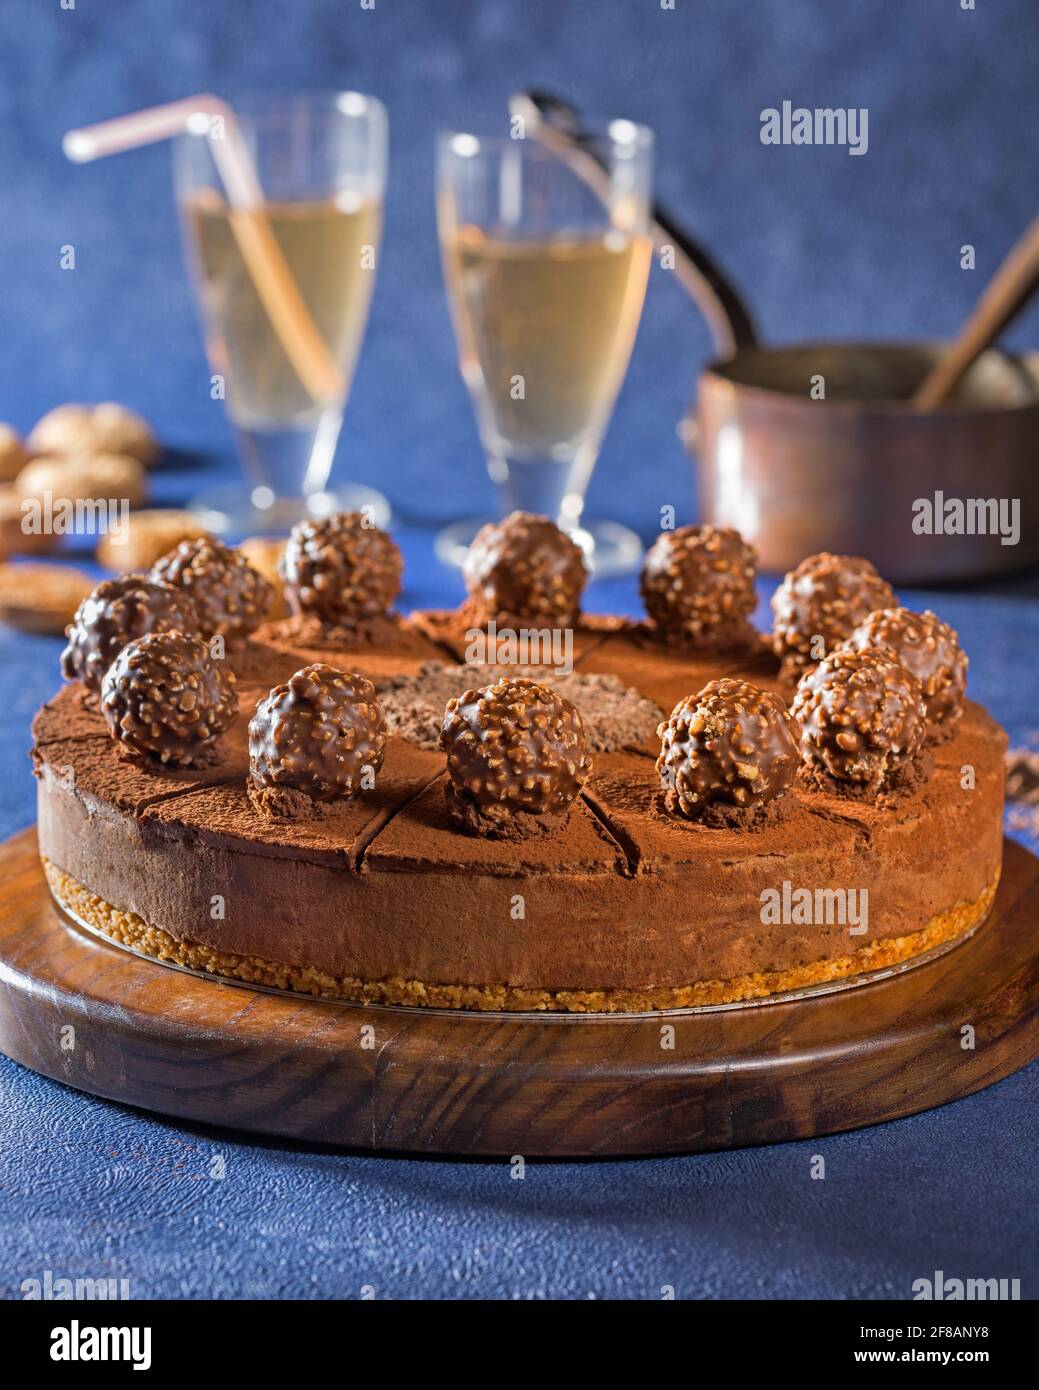 Chocolate truffle torte Stock Photo